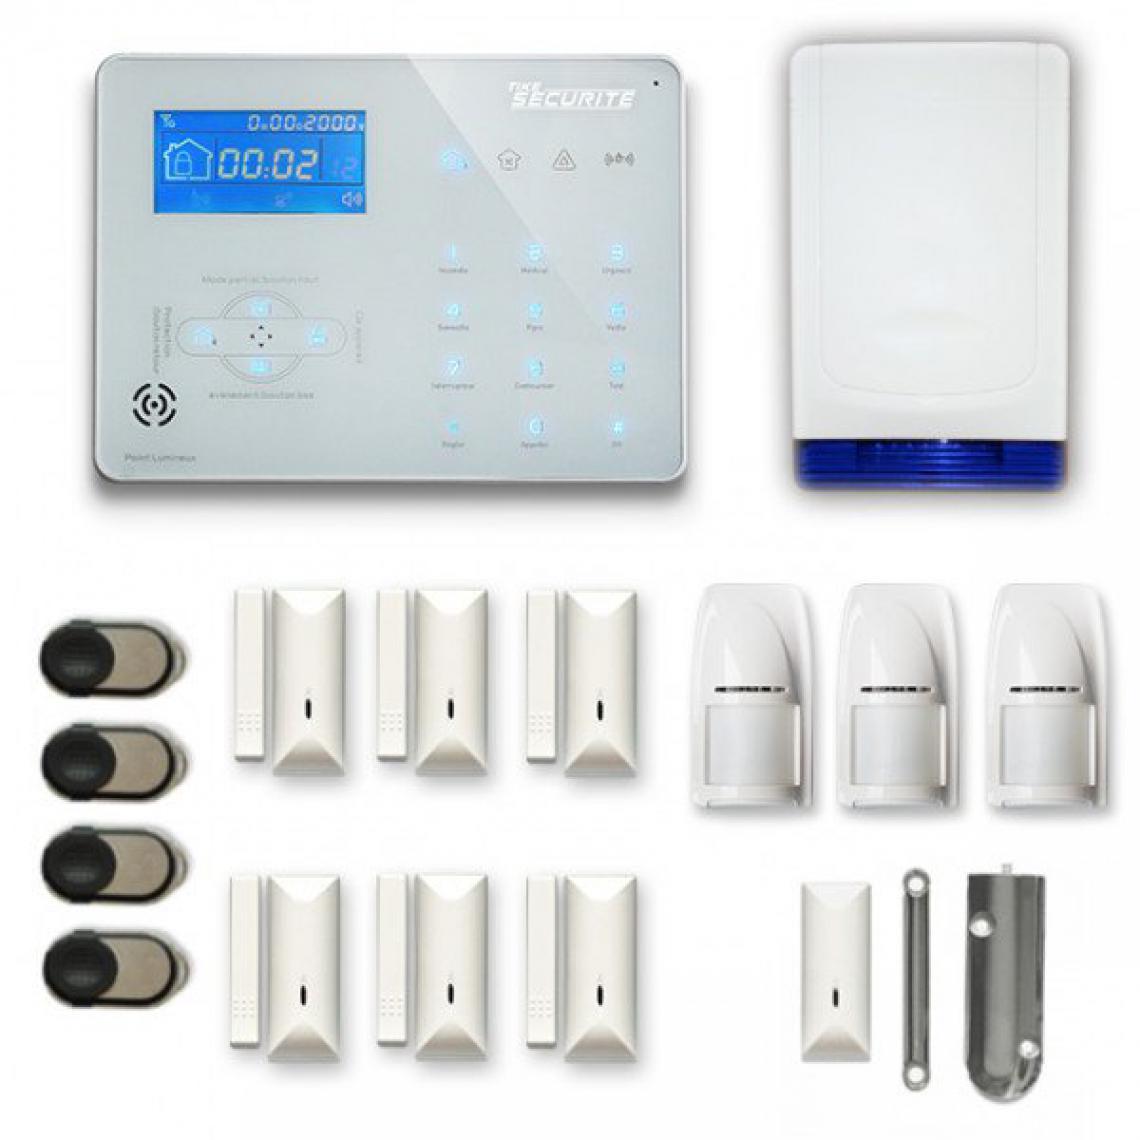 Tike Securite - Alarme maison sans fil ICE-B57 Compatible Box internet - Alarme connectée